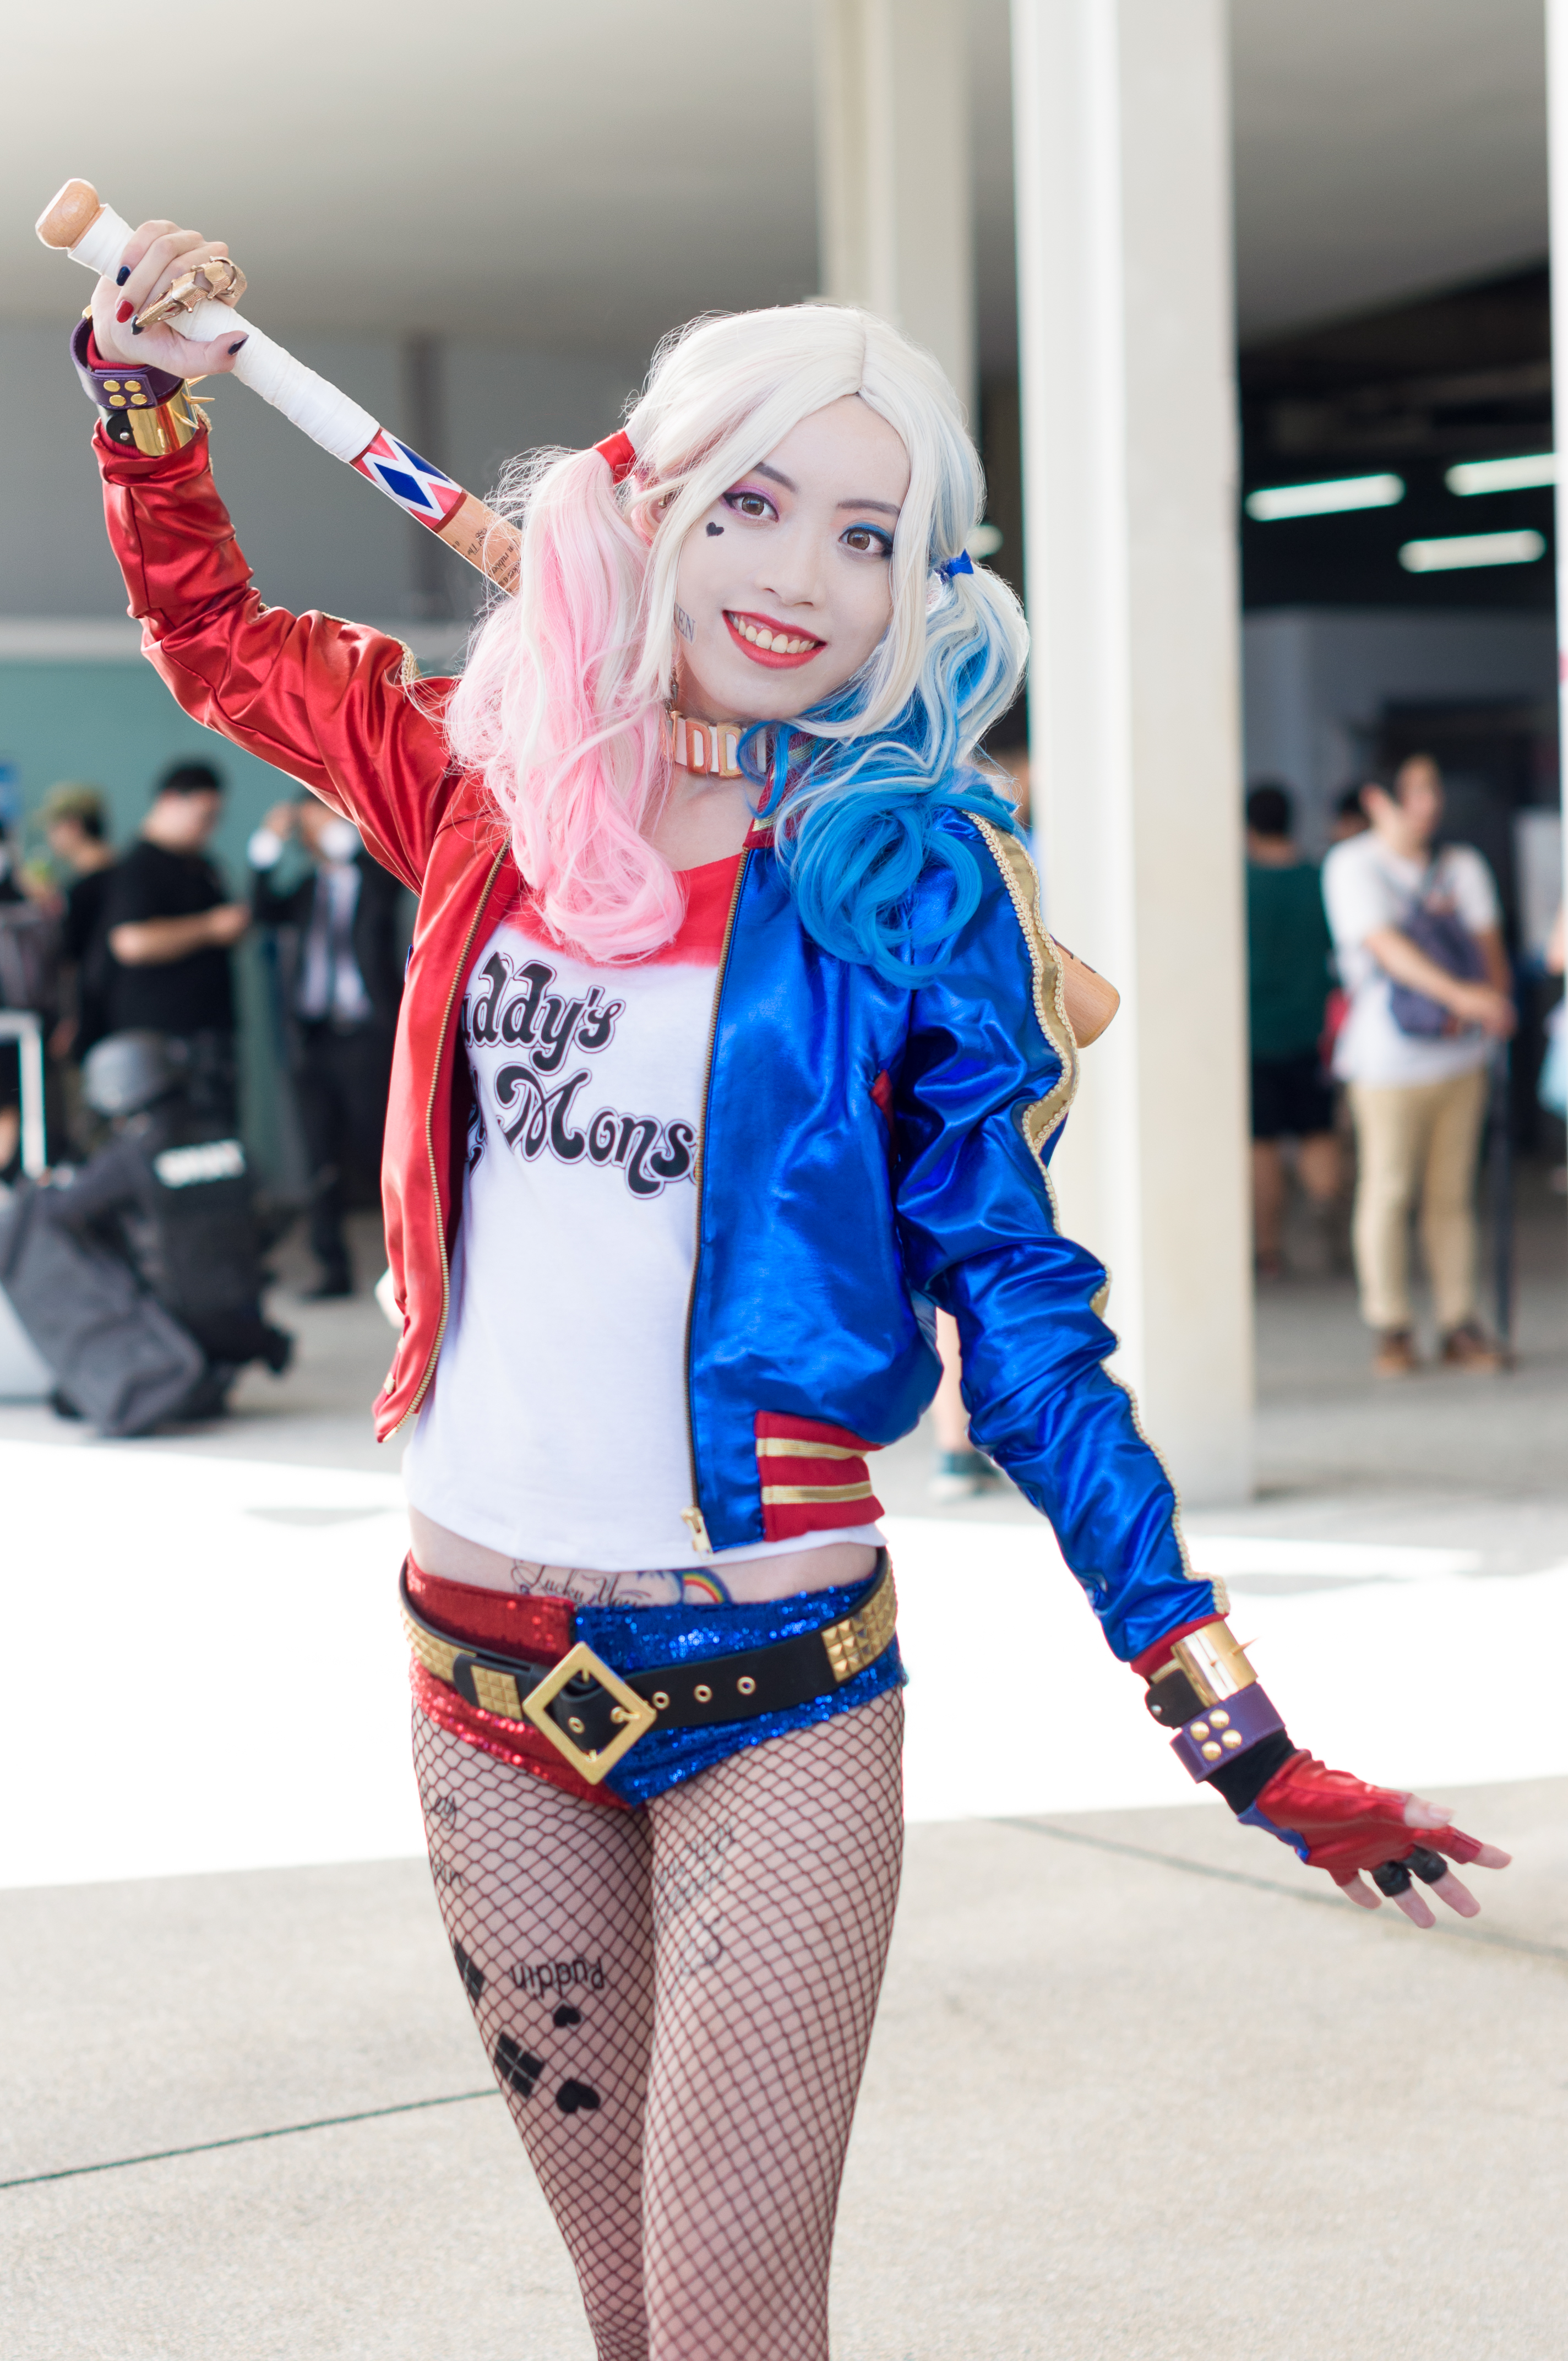 Harley Quinn (Universo extendido de DC) - Wikipedia, la enciclopedia libre